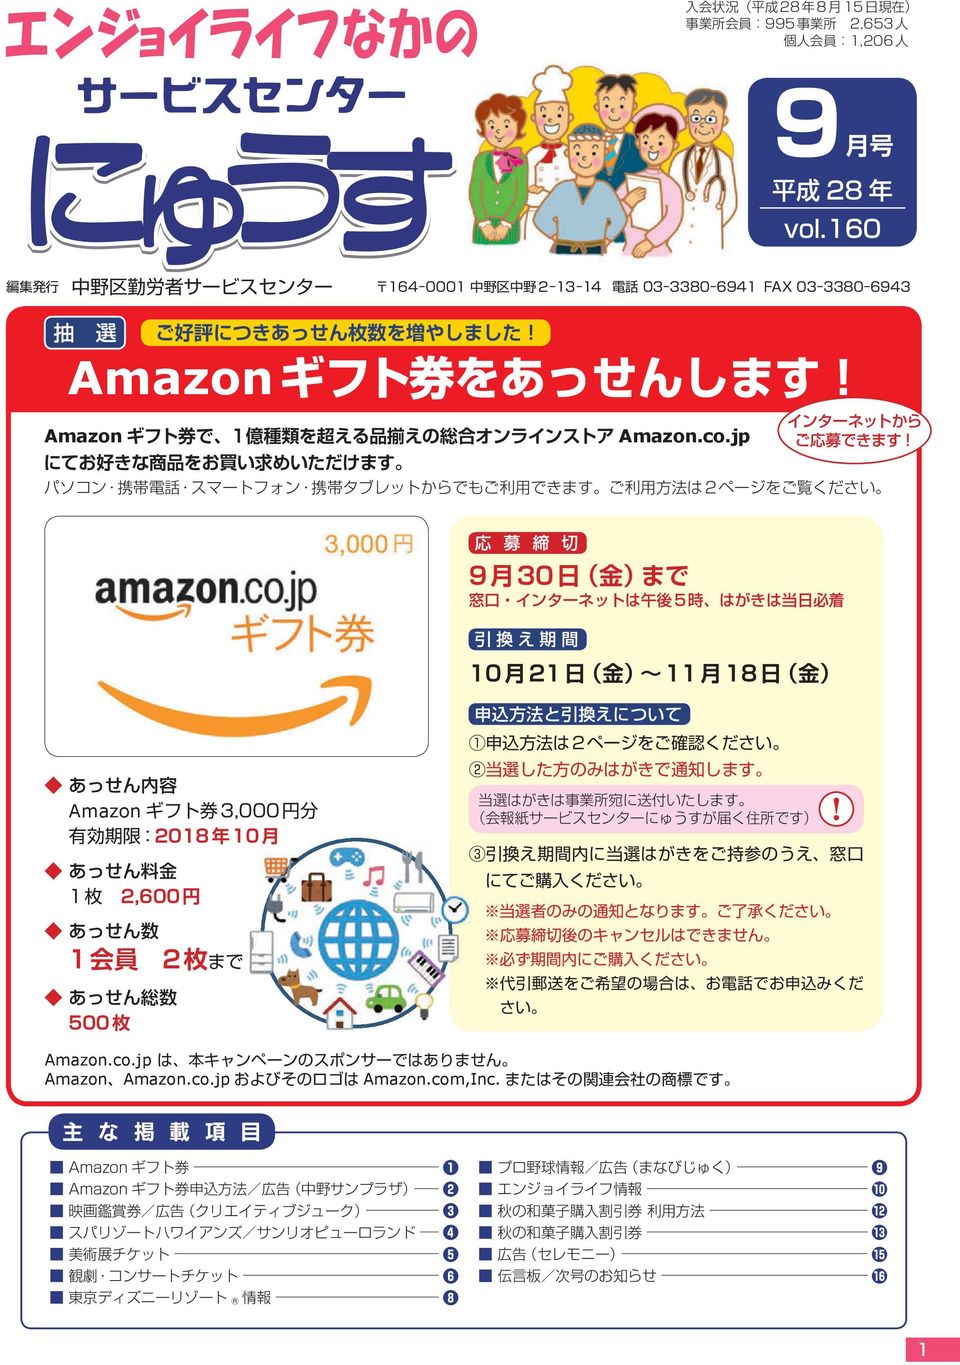 co.jp AmazonAmazon.